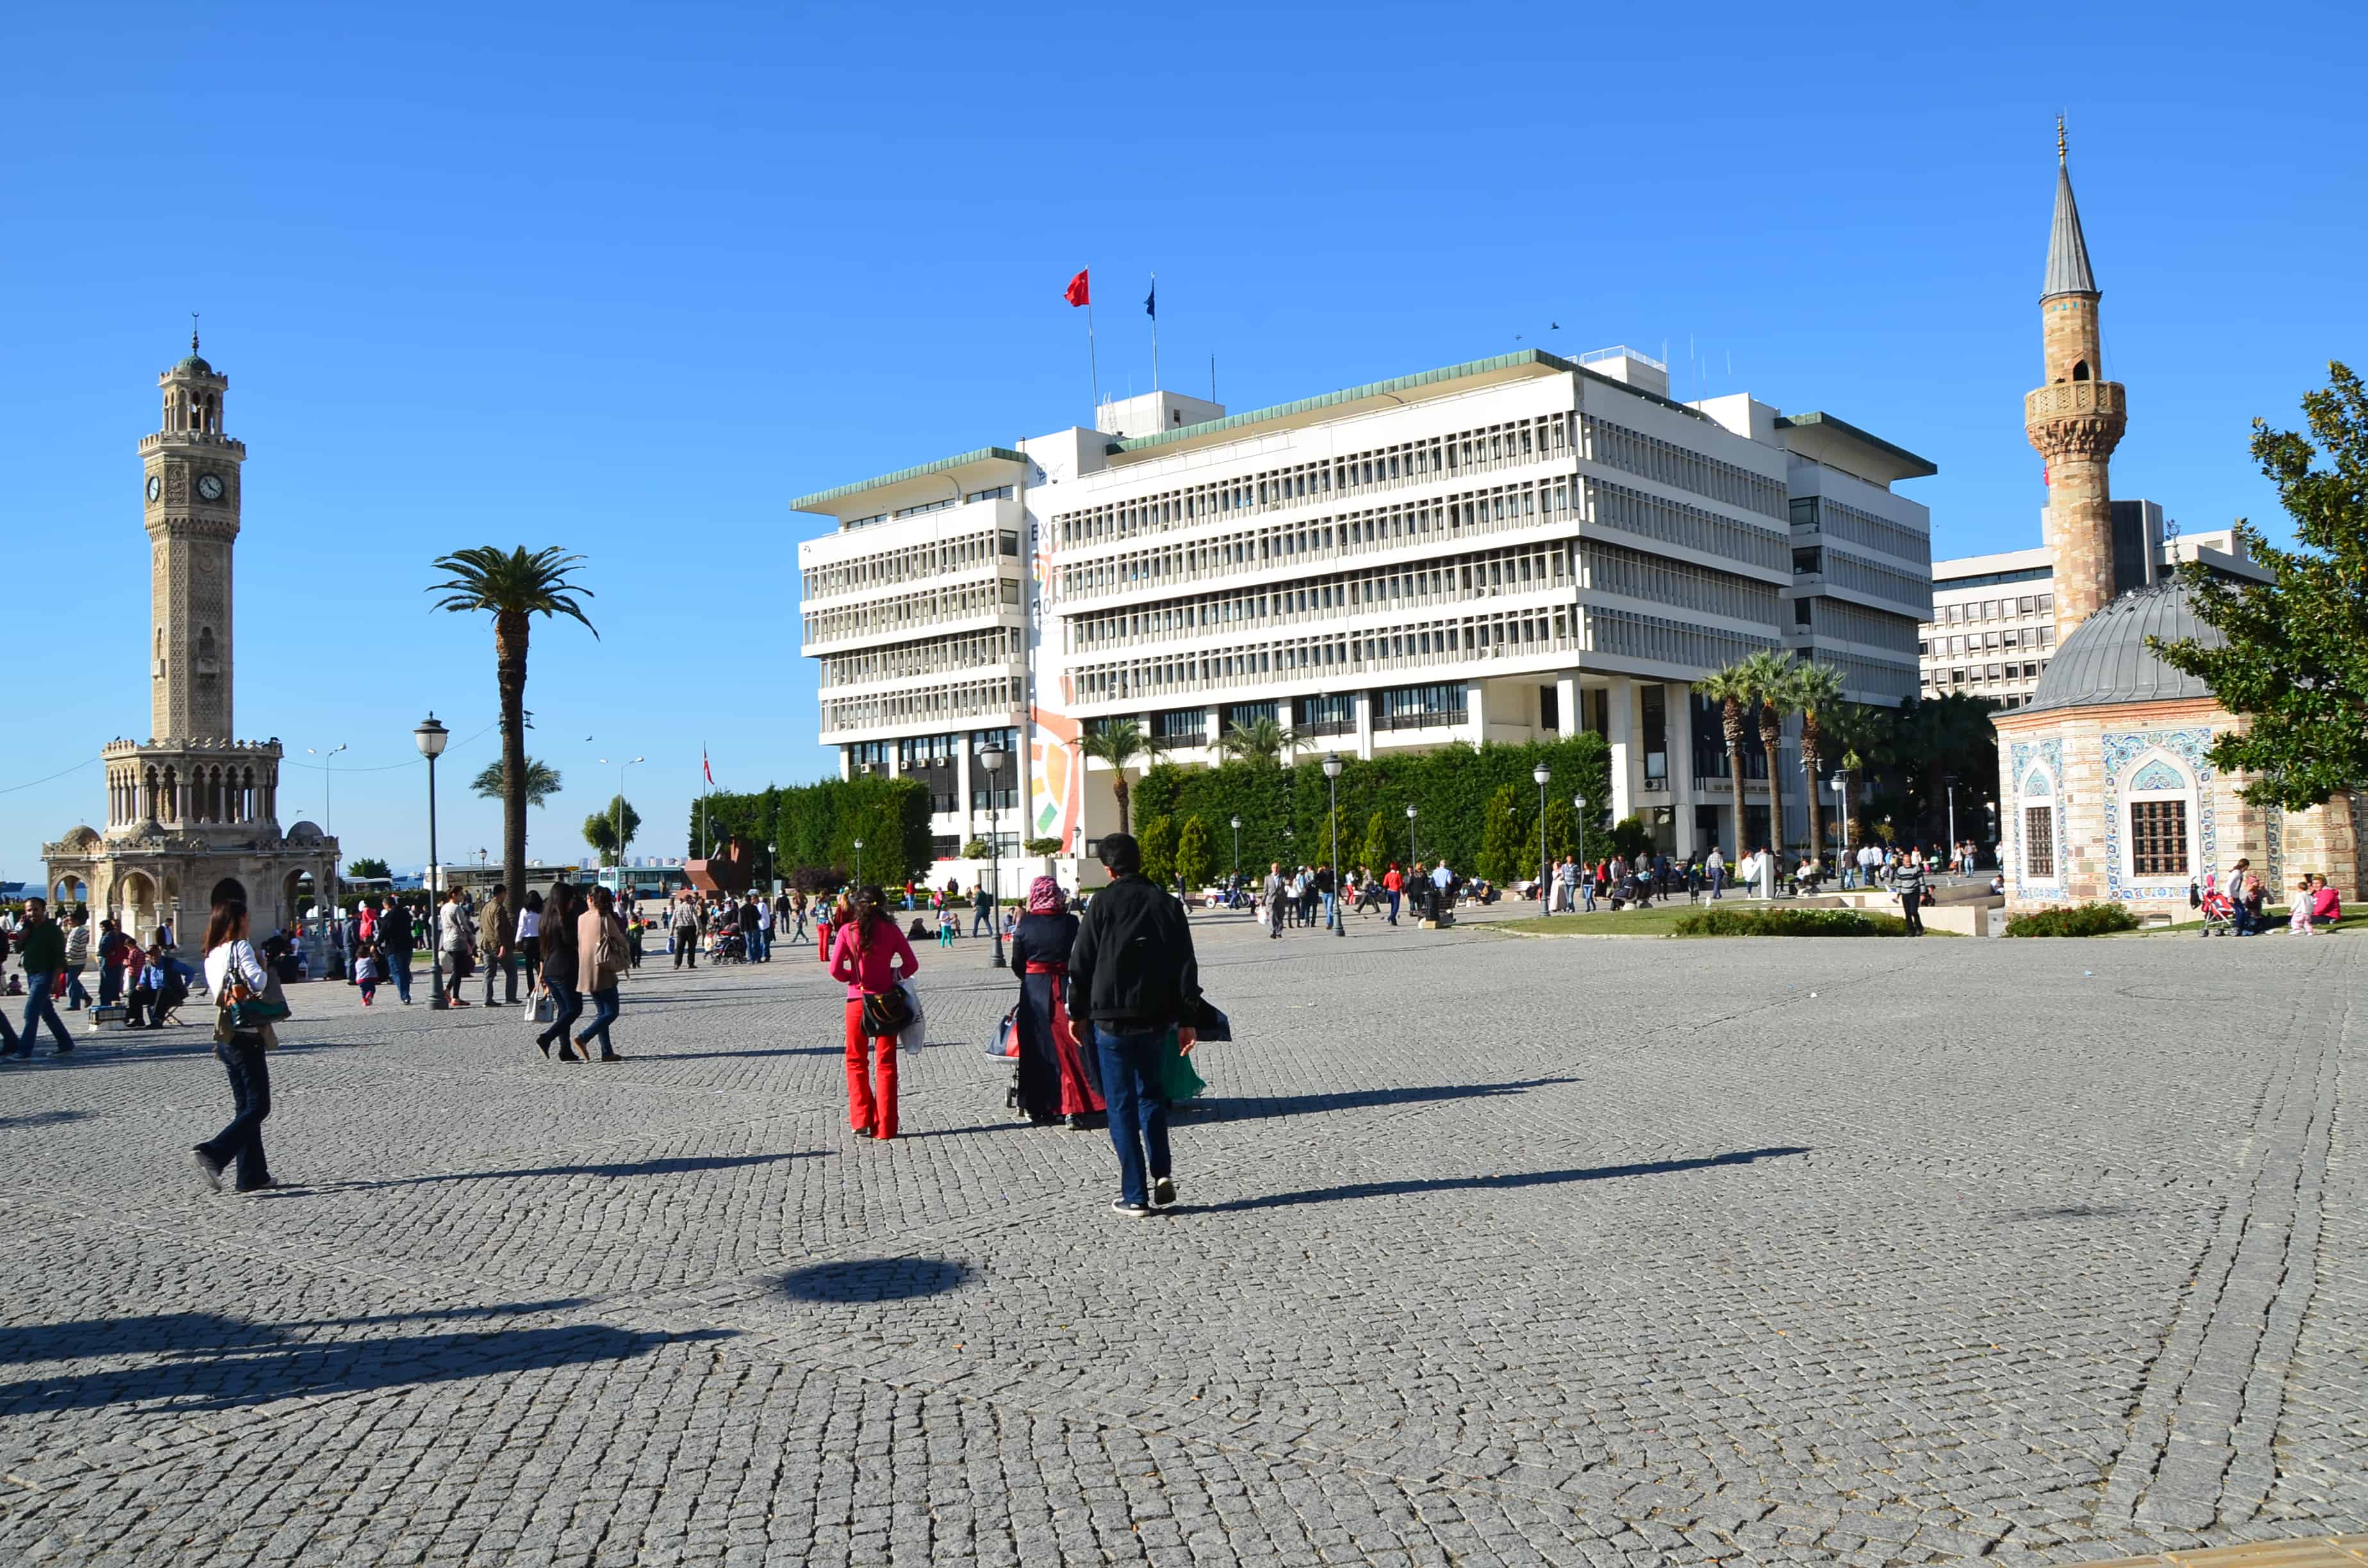 Konak Meydanı in Izmir, Turkey